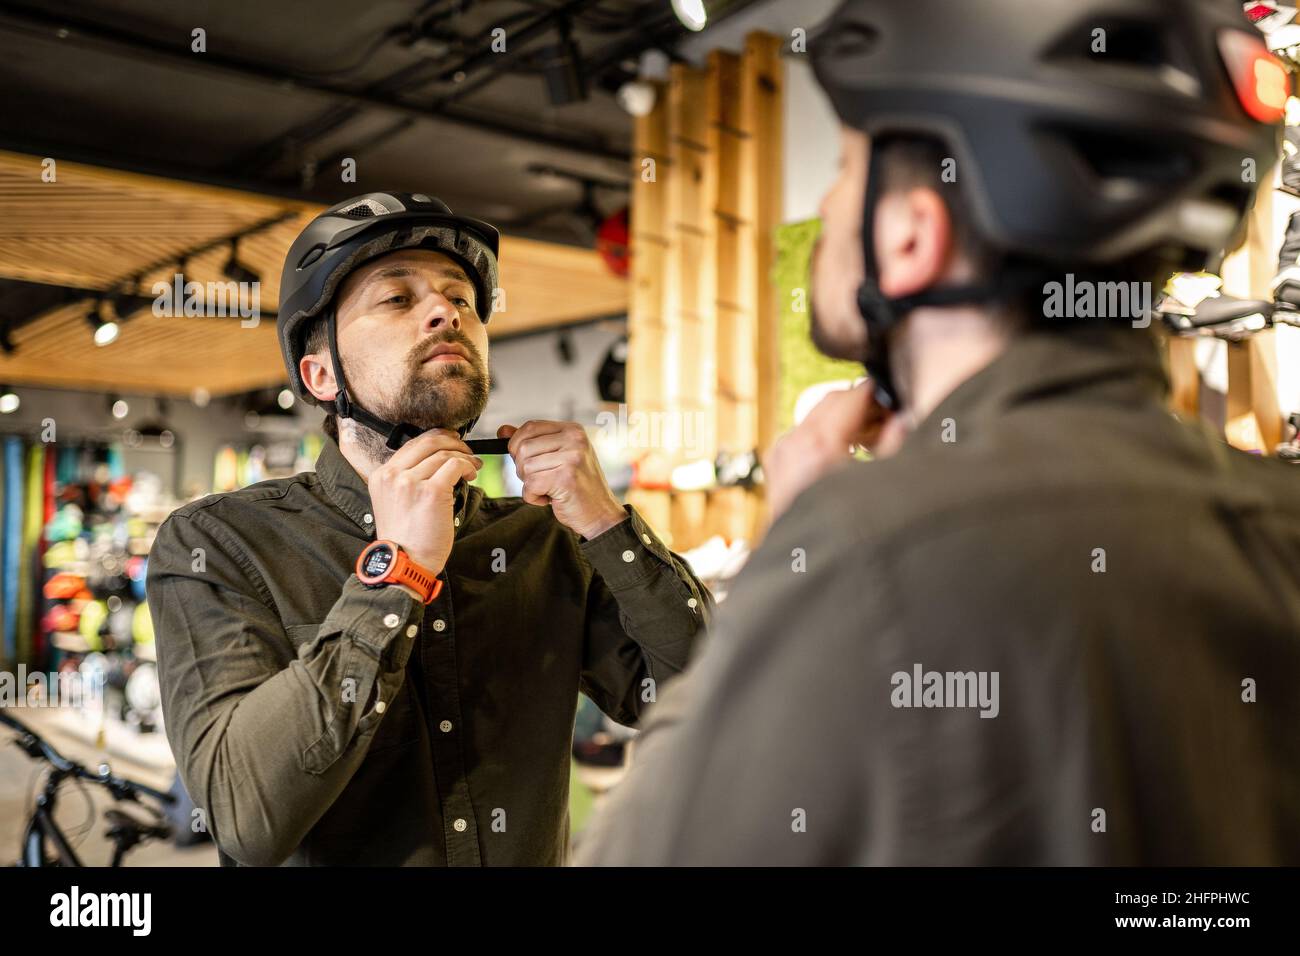 Hombre examinando cascos de bicicleta en una tienda de deportes mirándose  en espejo. Prueba de nuevo casco deportivo en la tienda de bicicletas.  Hombre poniendo casco de bicicleta en la tienda Fotografía